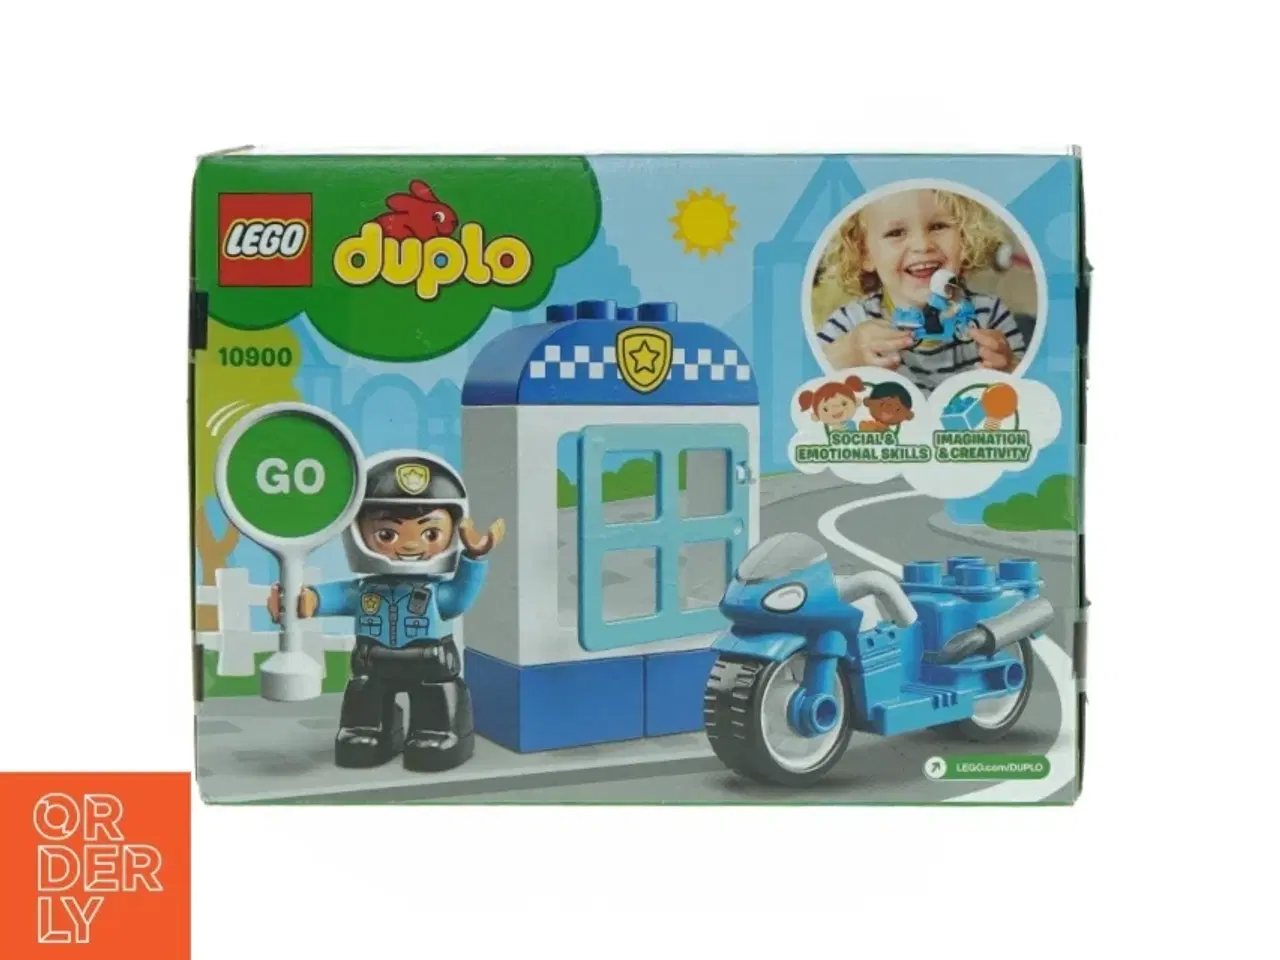 Billede 4 - Dubu politimand (modelnummer 1 0 9 0 0)50 fra Lego (str. 13 cm x 20 cm x 6 cm)